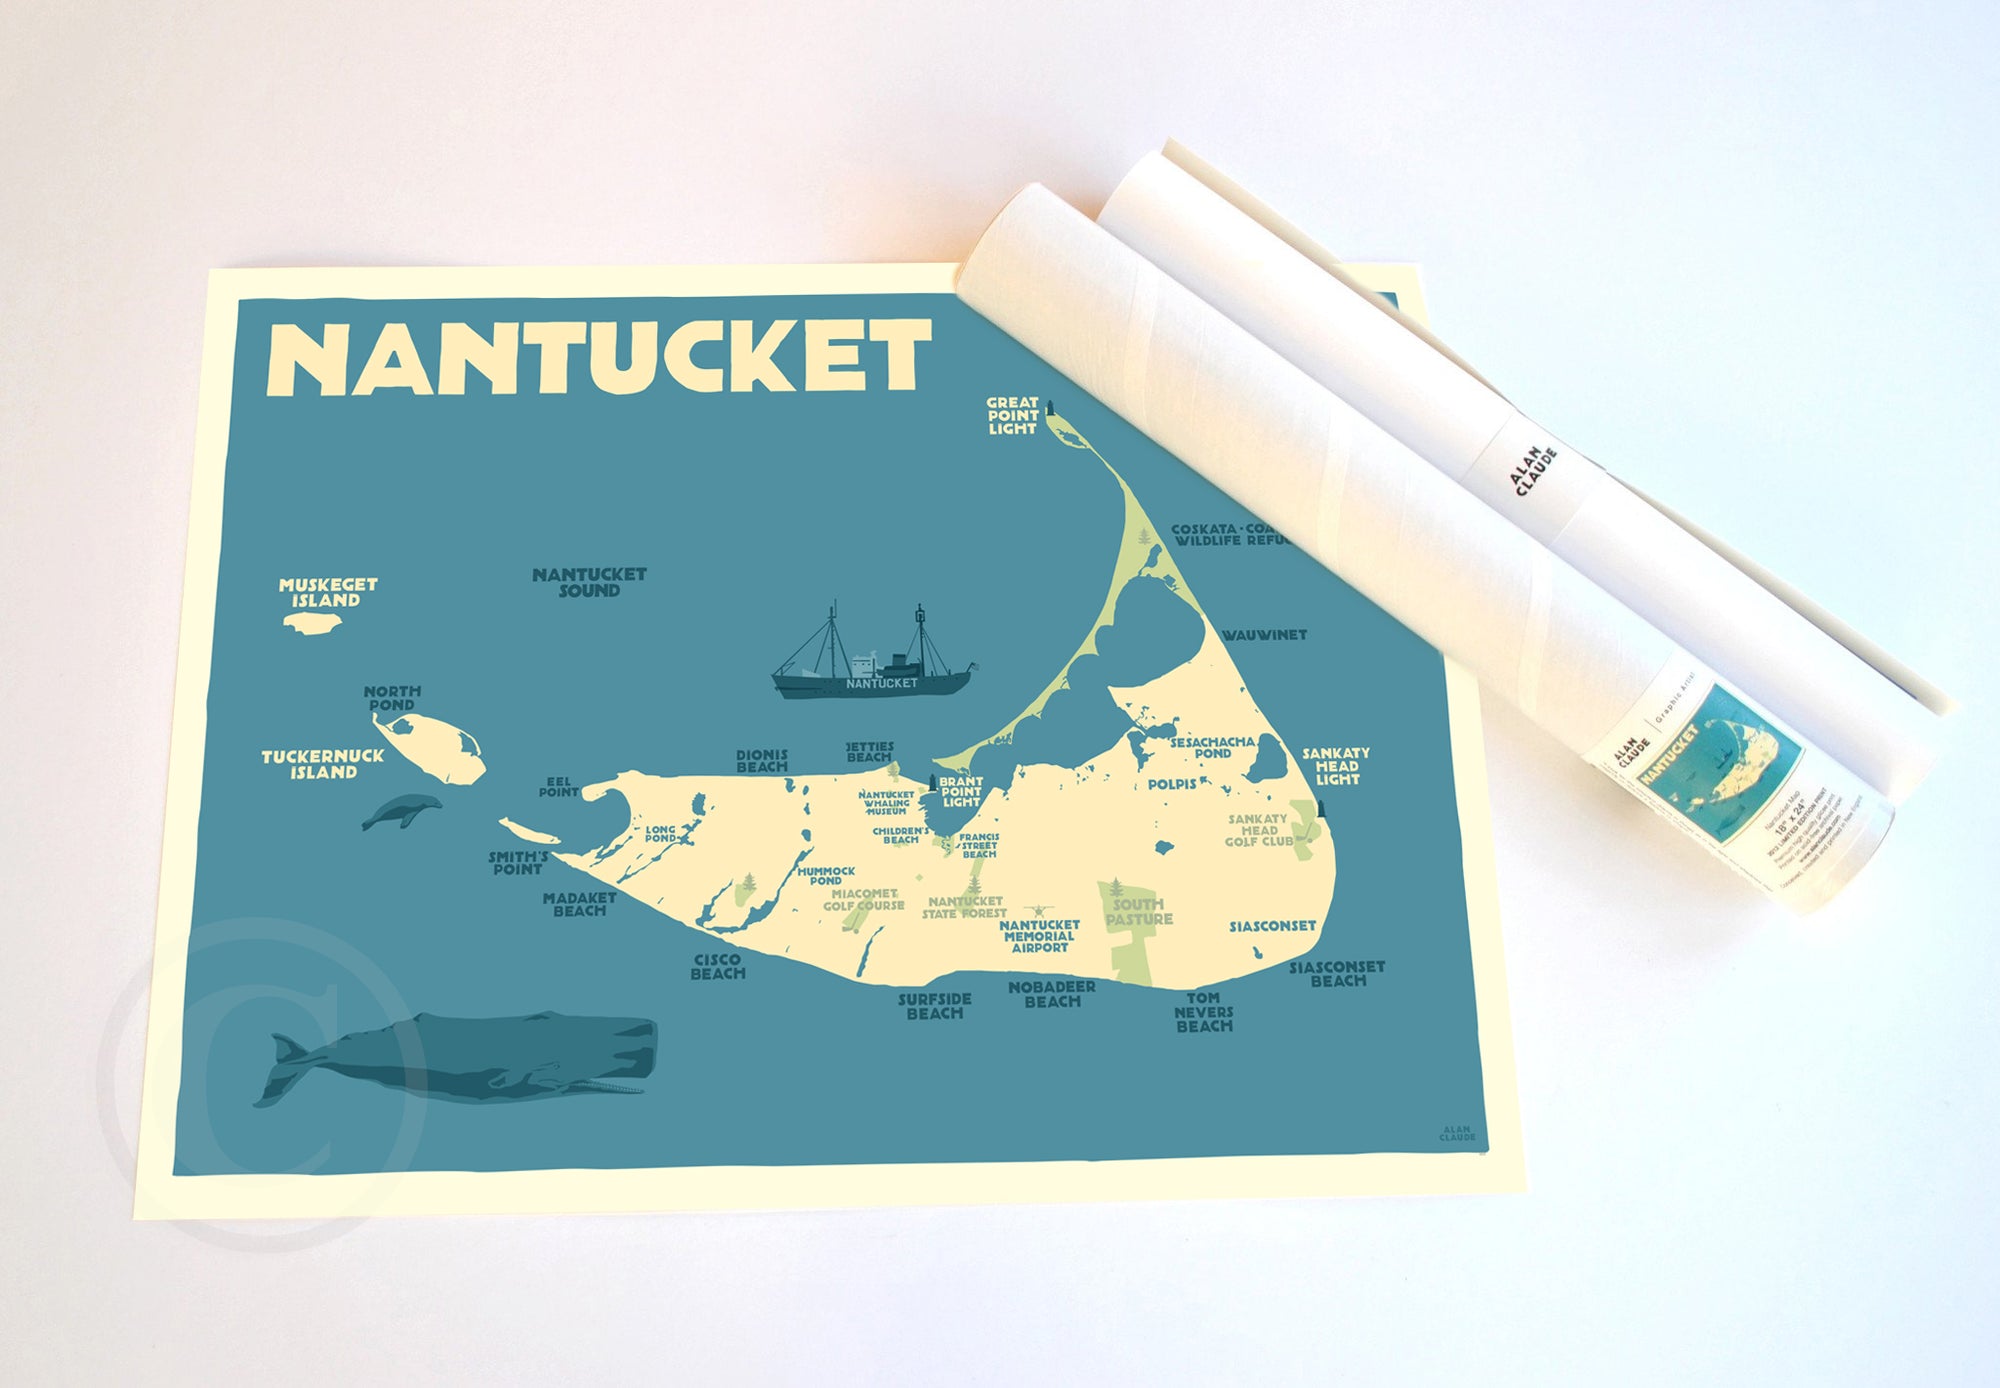 Nantucket Map Art Print 18" x 24" Travel Poster By Alan Claude - Massachusetts